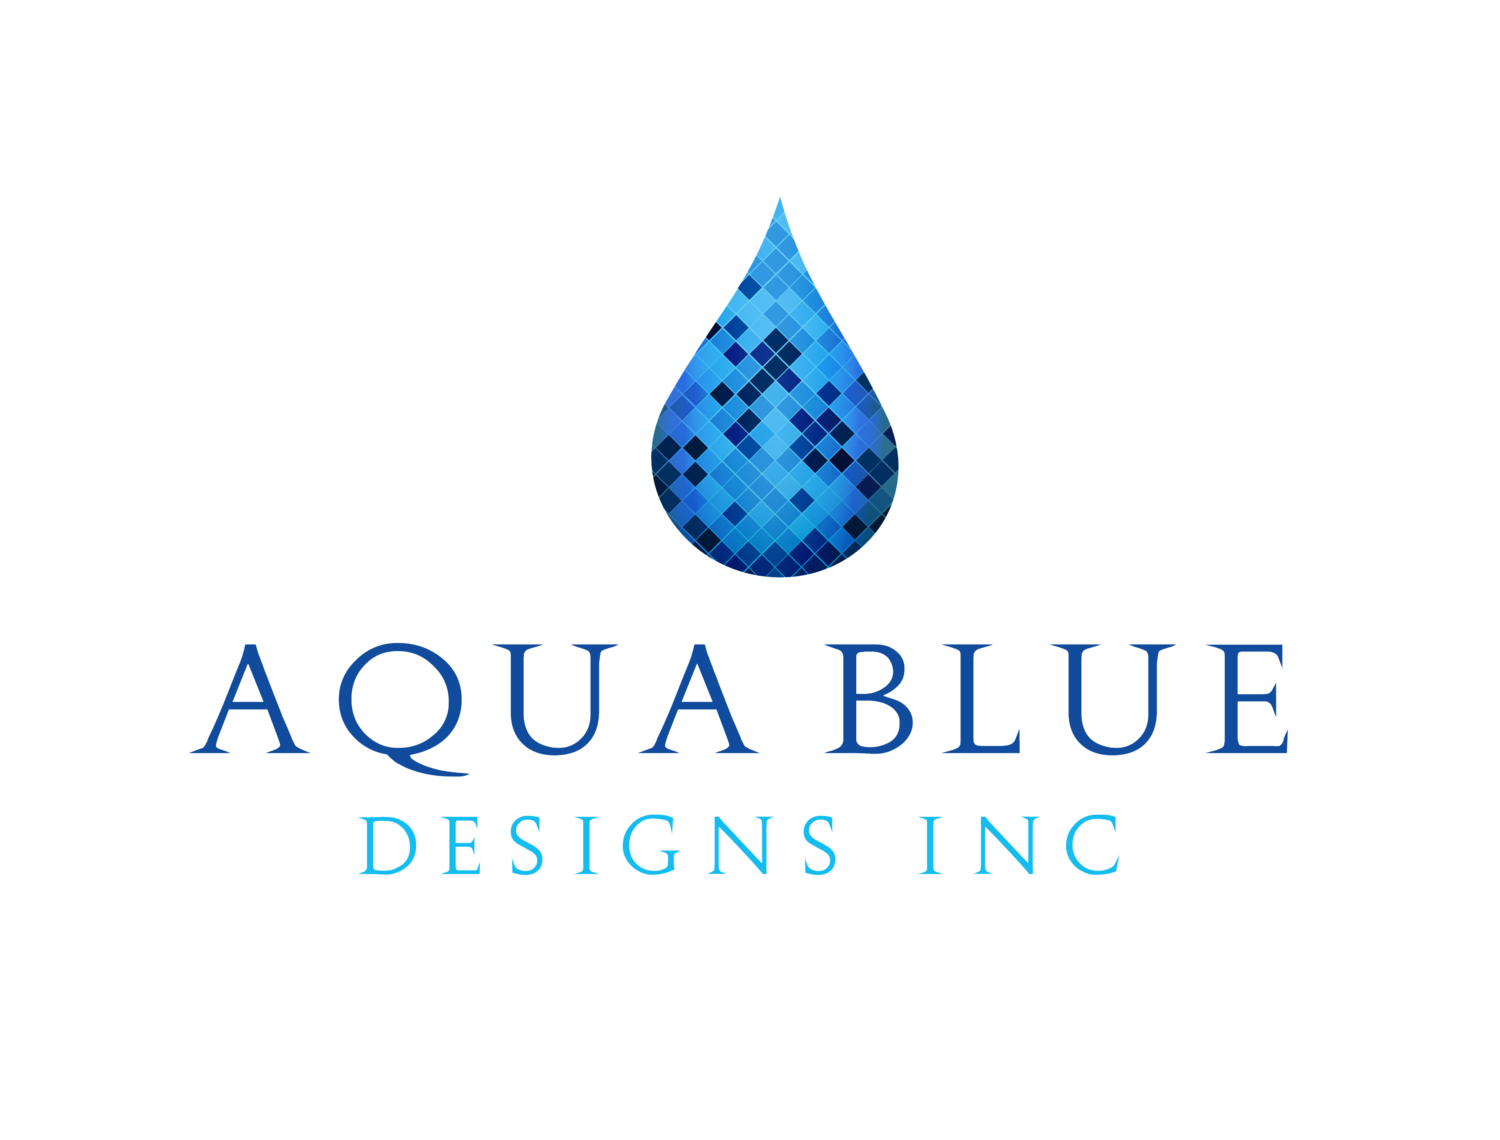 Aqua Blue Designs Inc